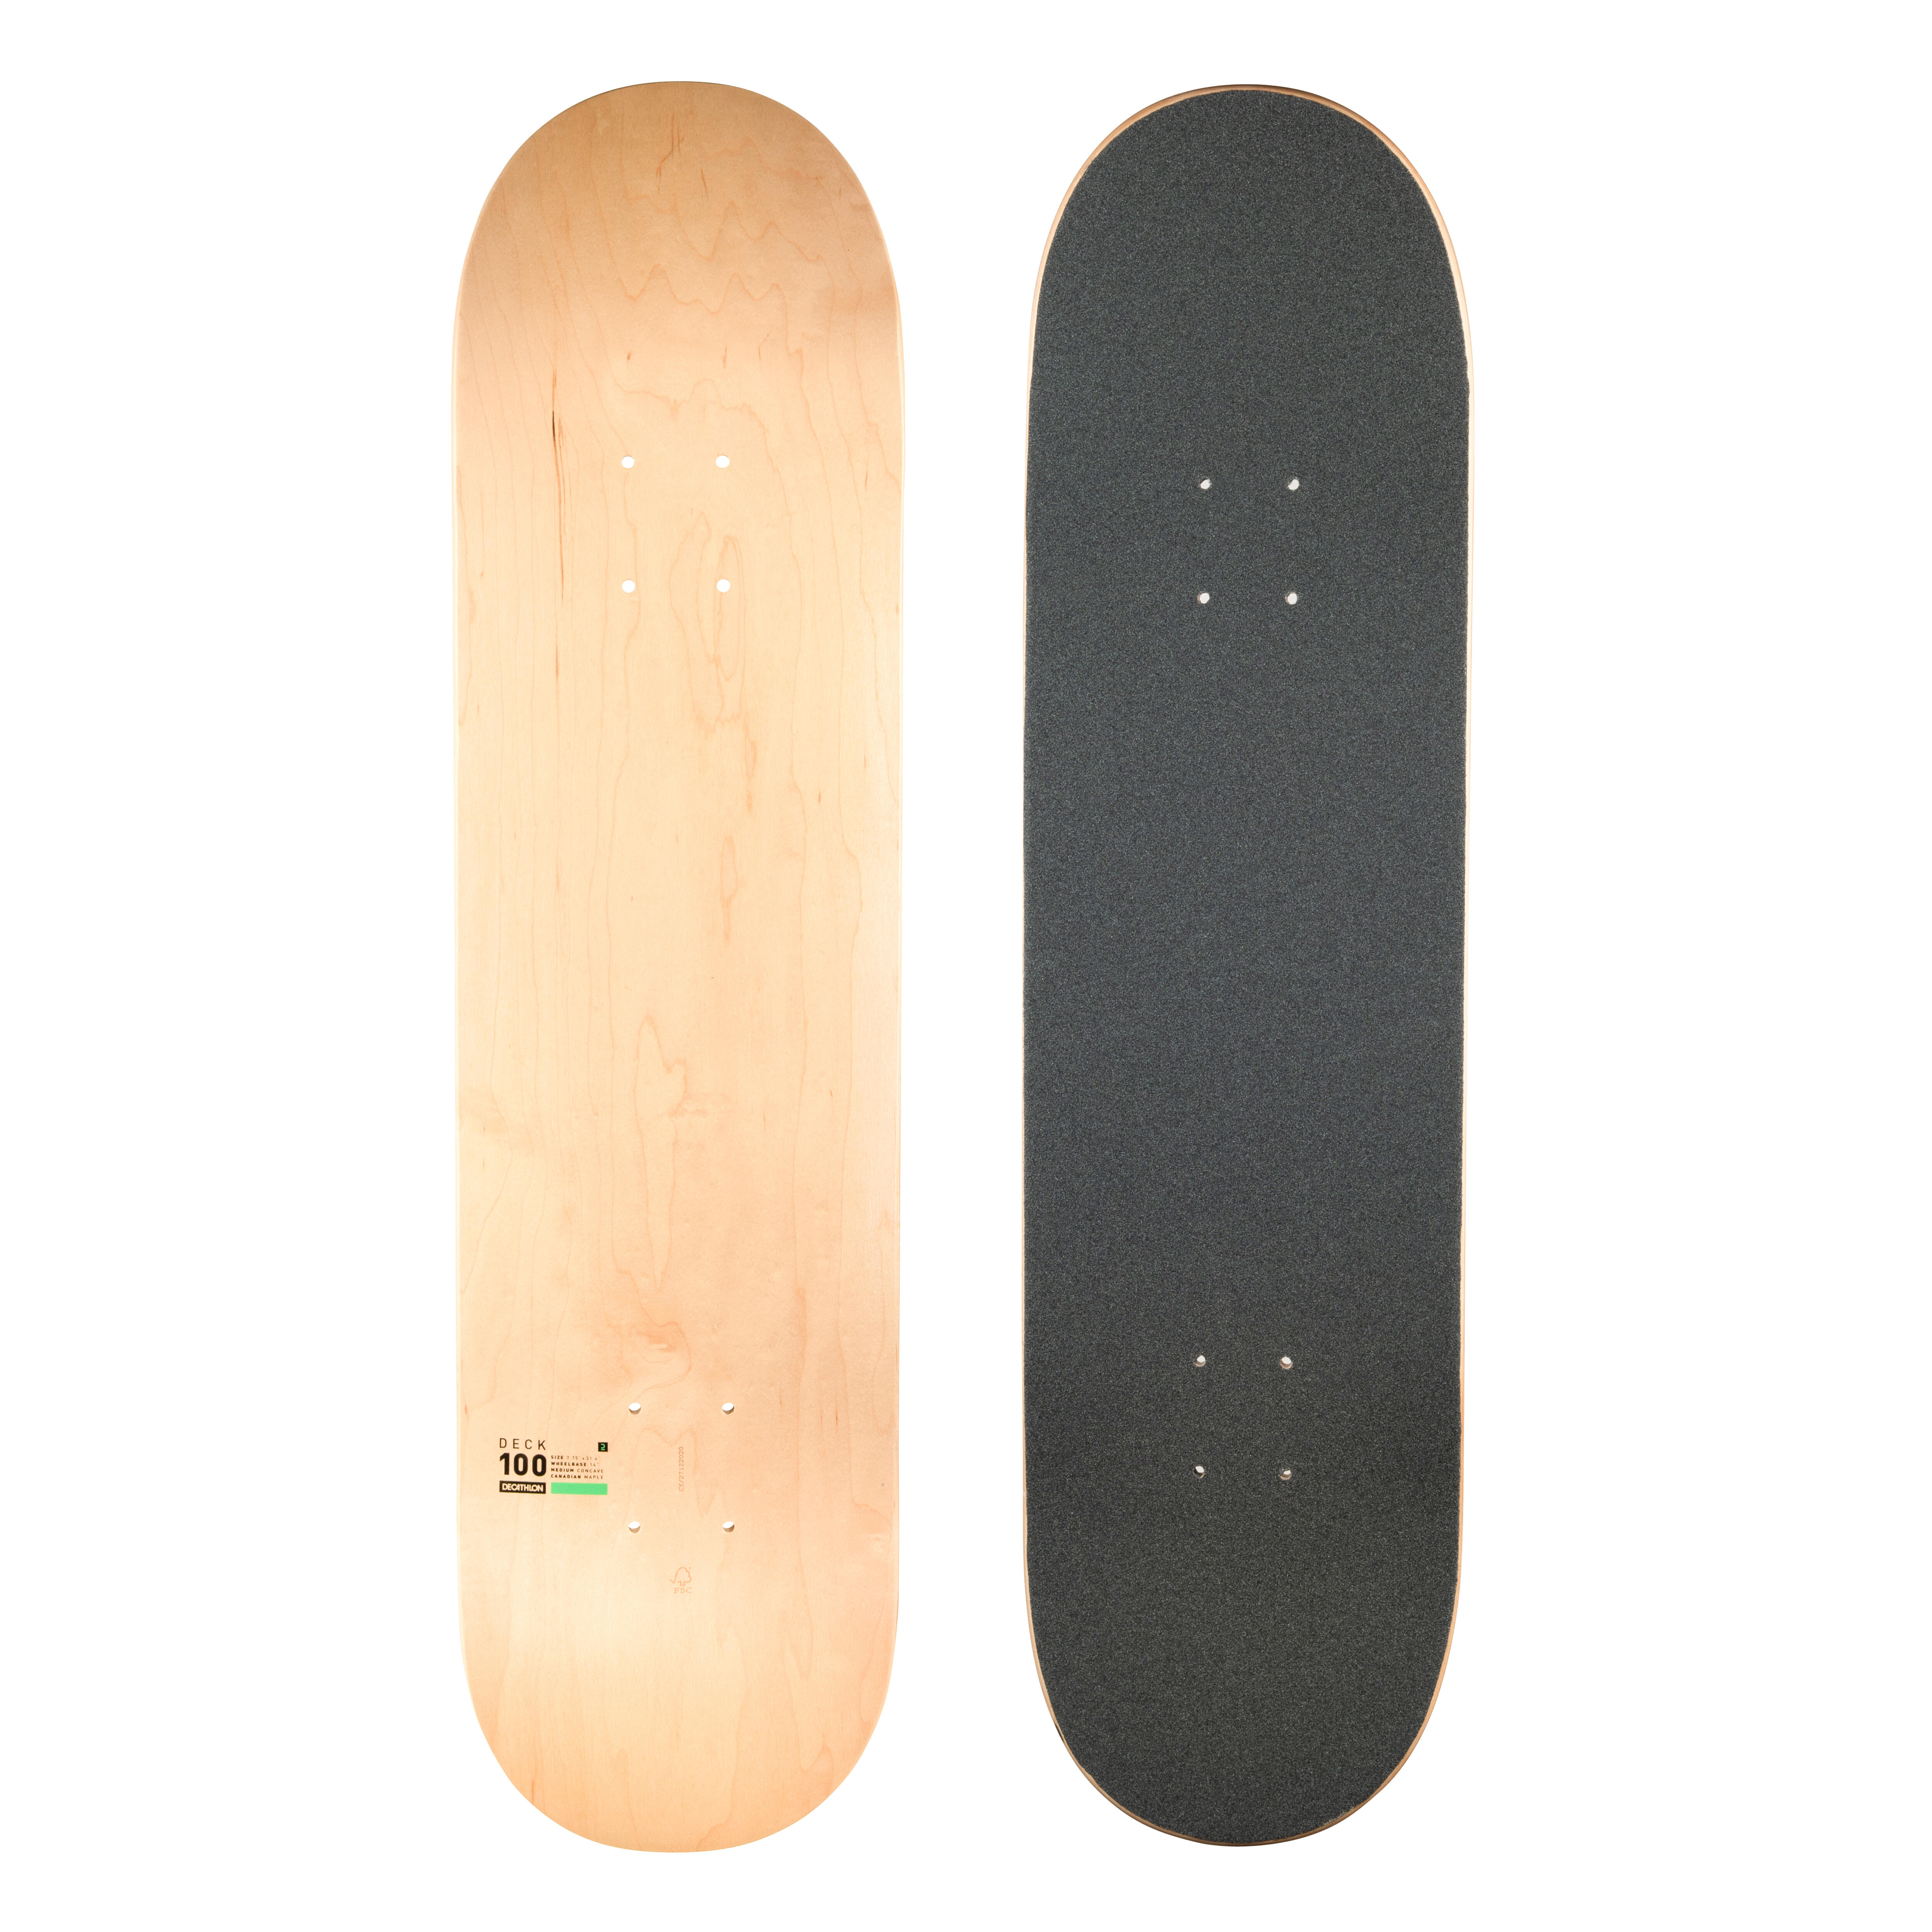 Placă Skateboard cu grip DK100 Mărimea 7.75″ 7.75"